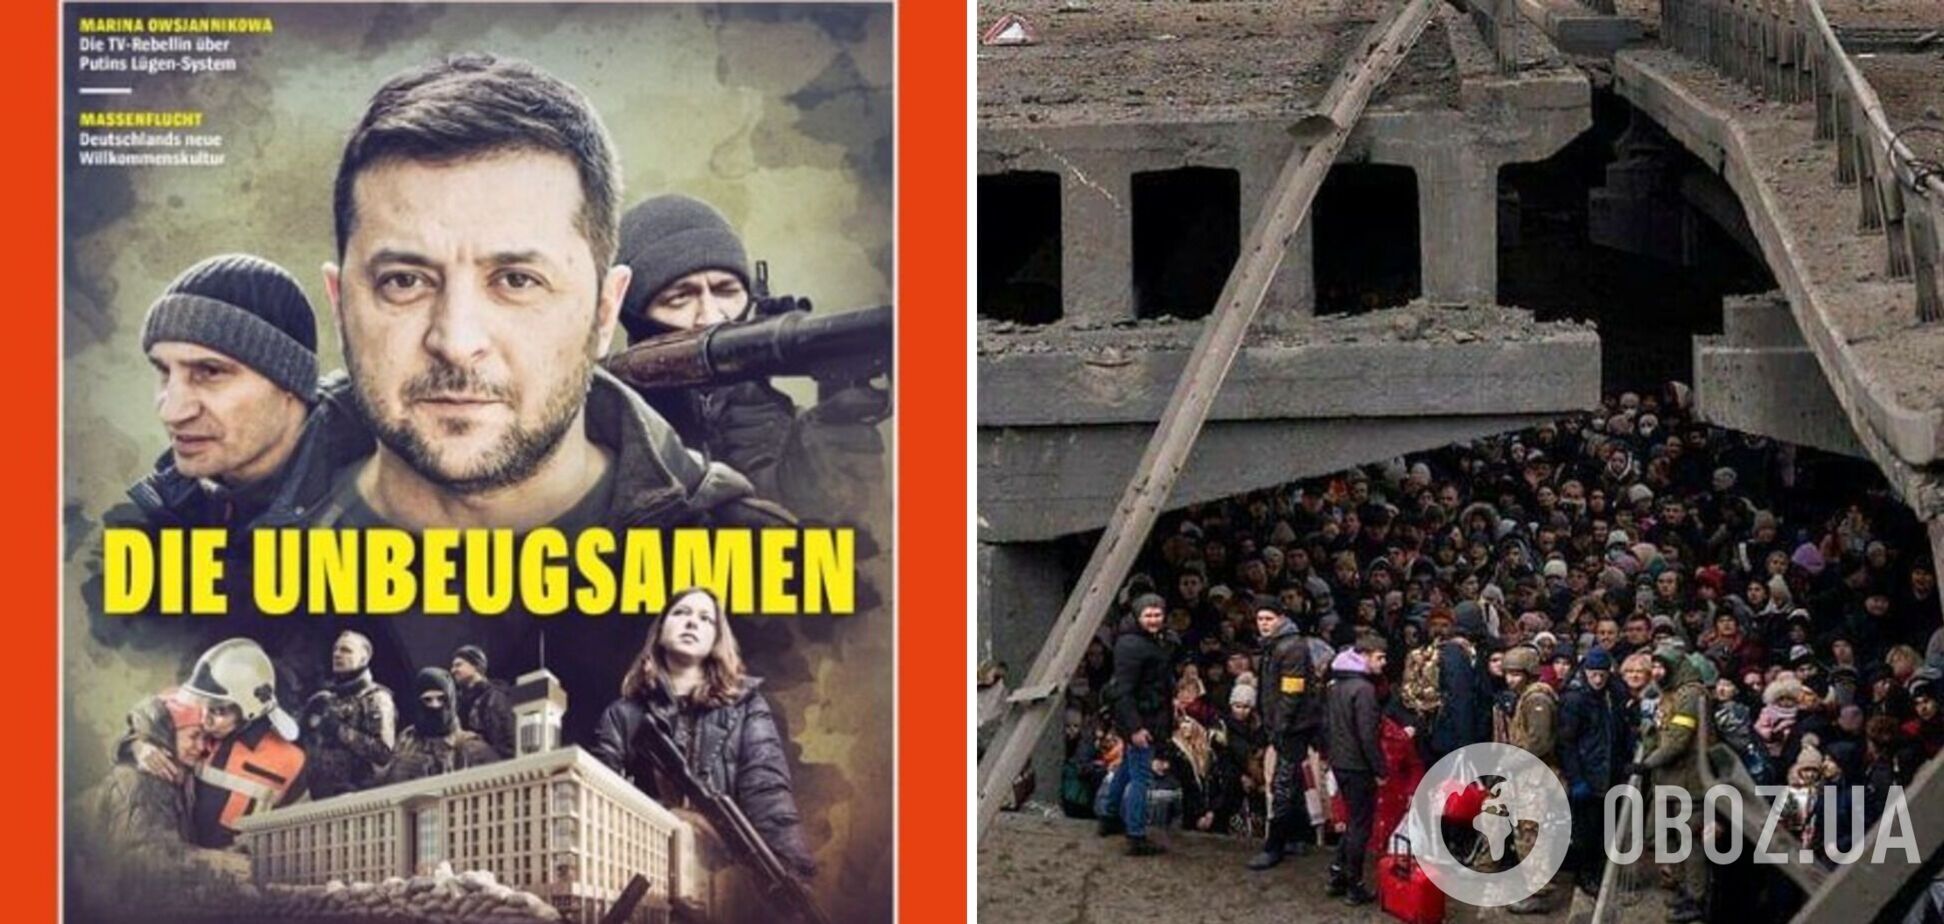 Der Spiegel присвятив свій новий номер подіям в Україні